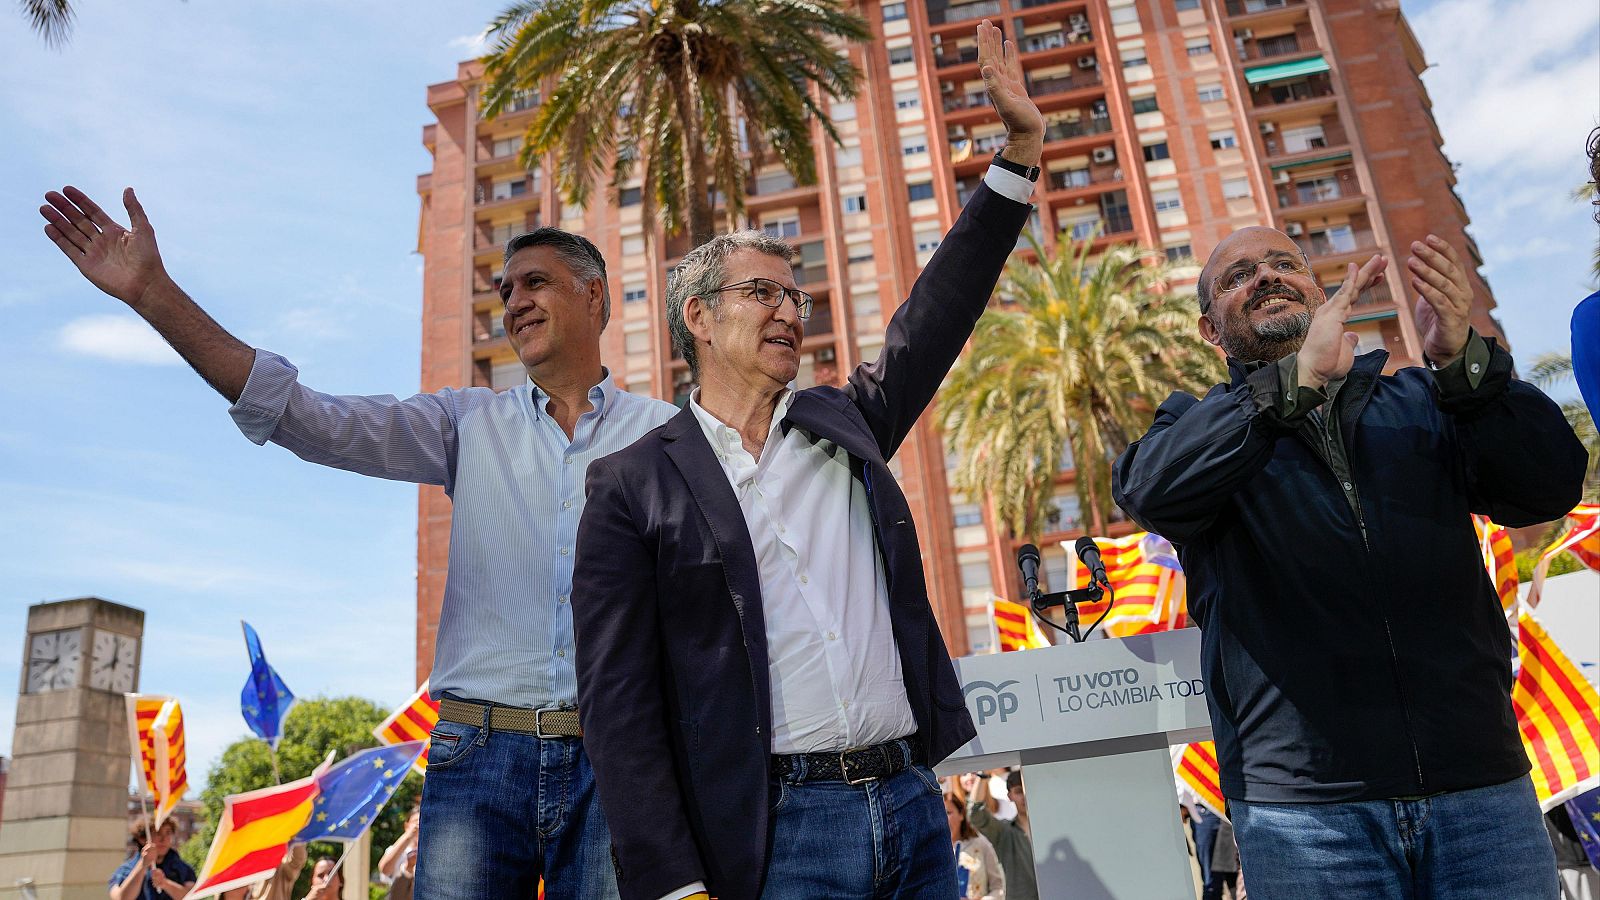 Elecciones catalanas: Feijóo carga contra el "sucedáneo de democracia" de Sánchez y critica al PSC "separatista" que "pactará con Puigdemont"